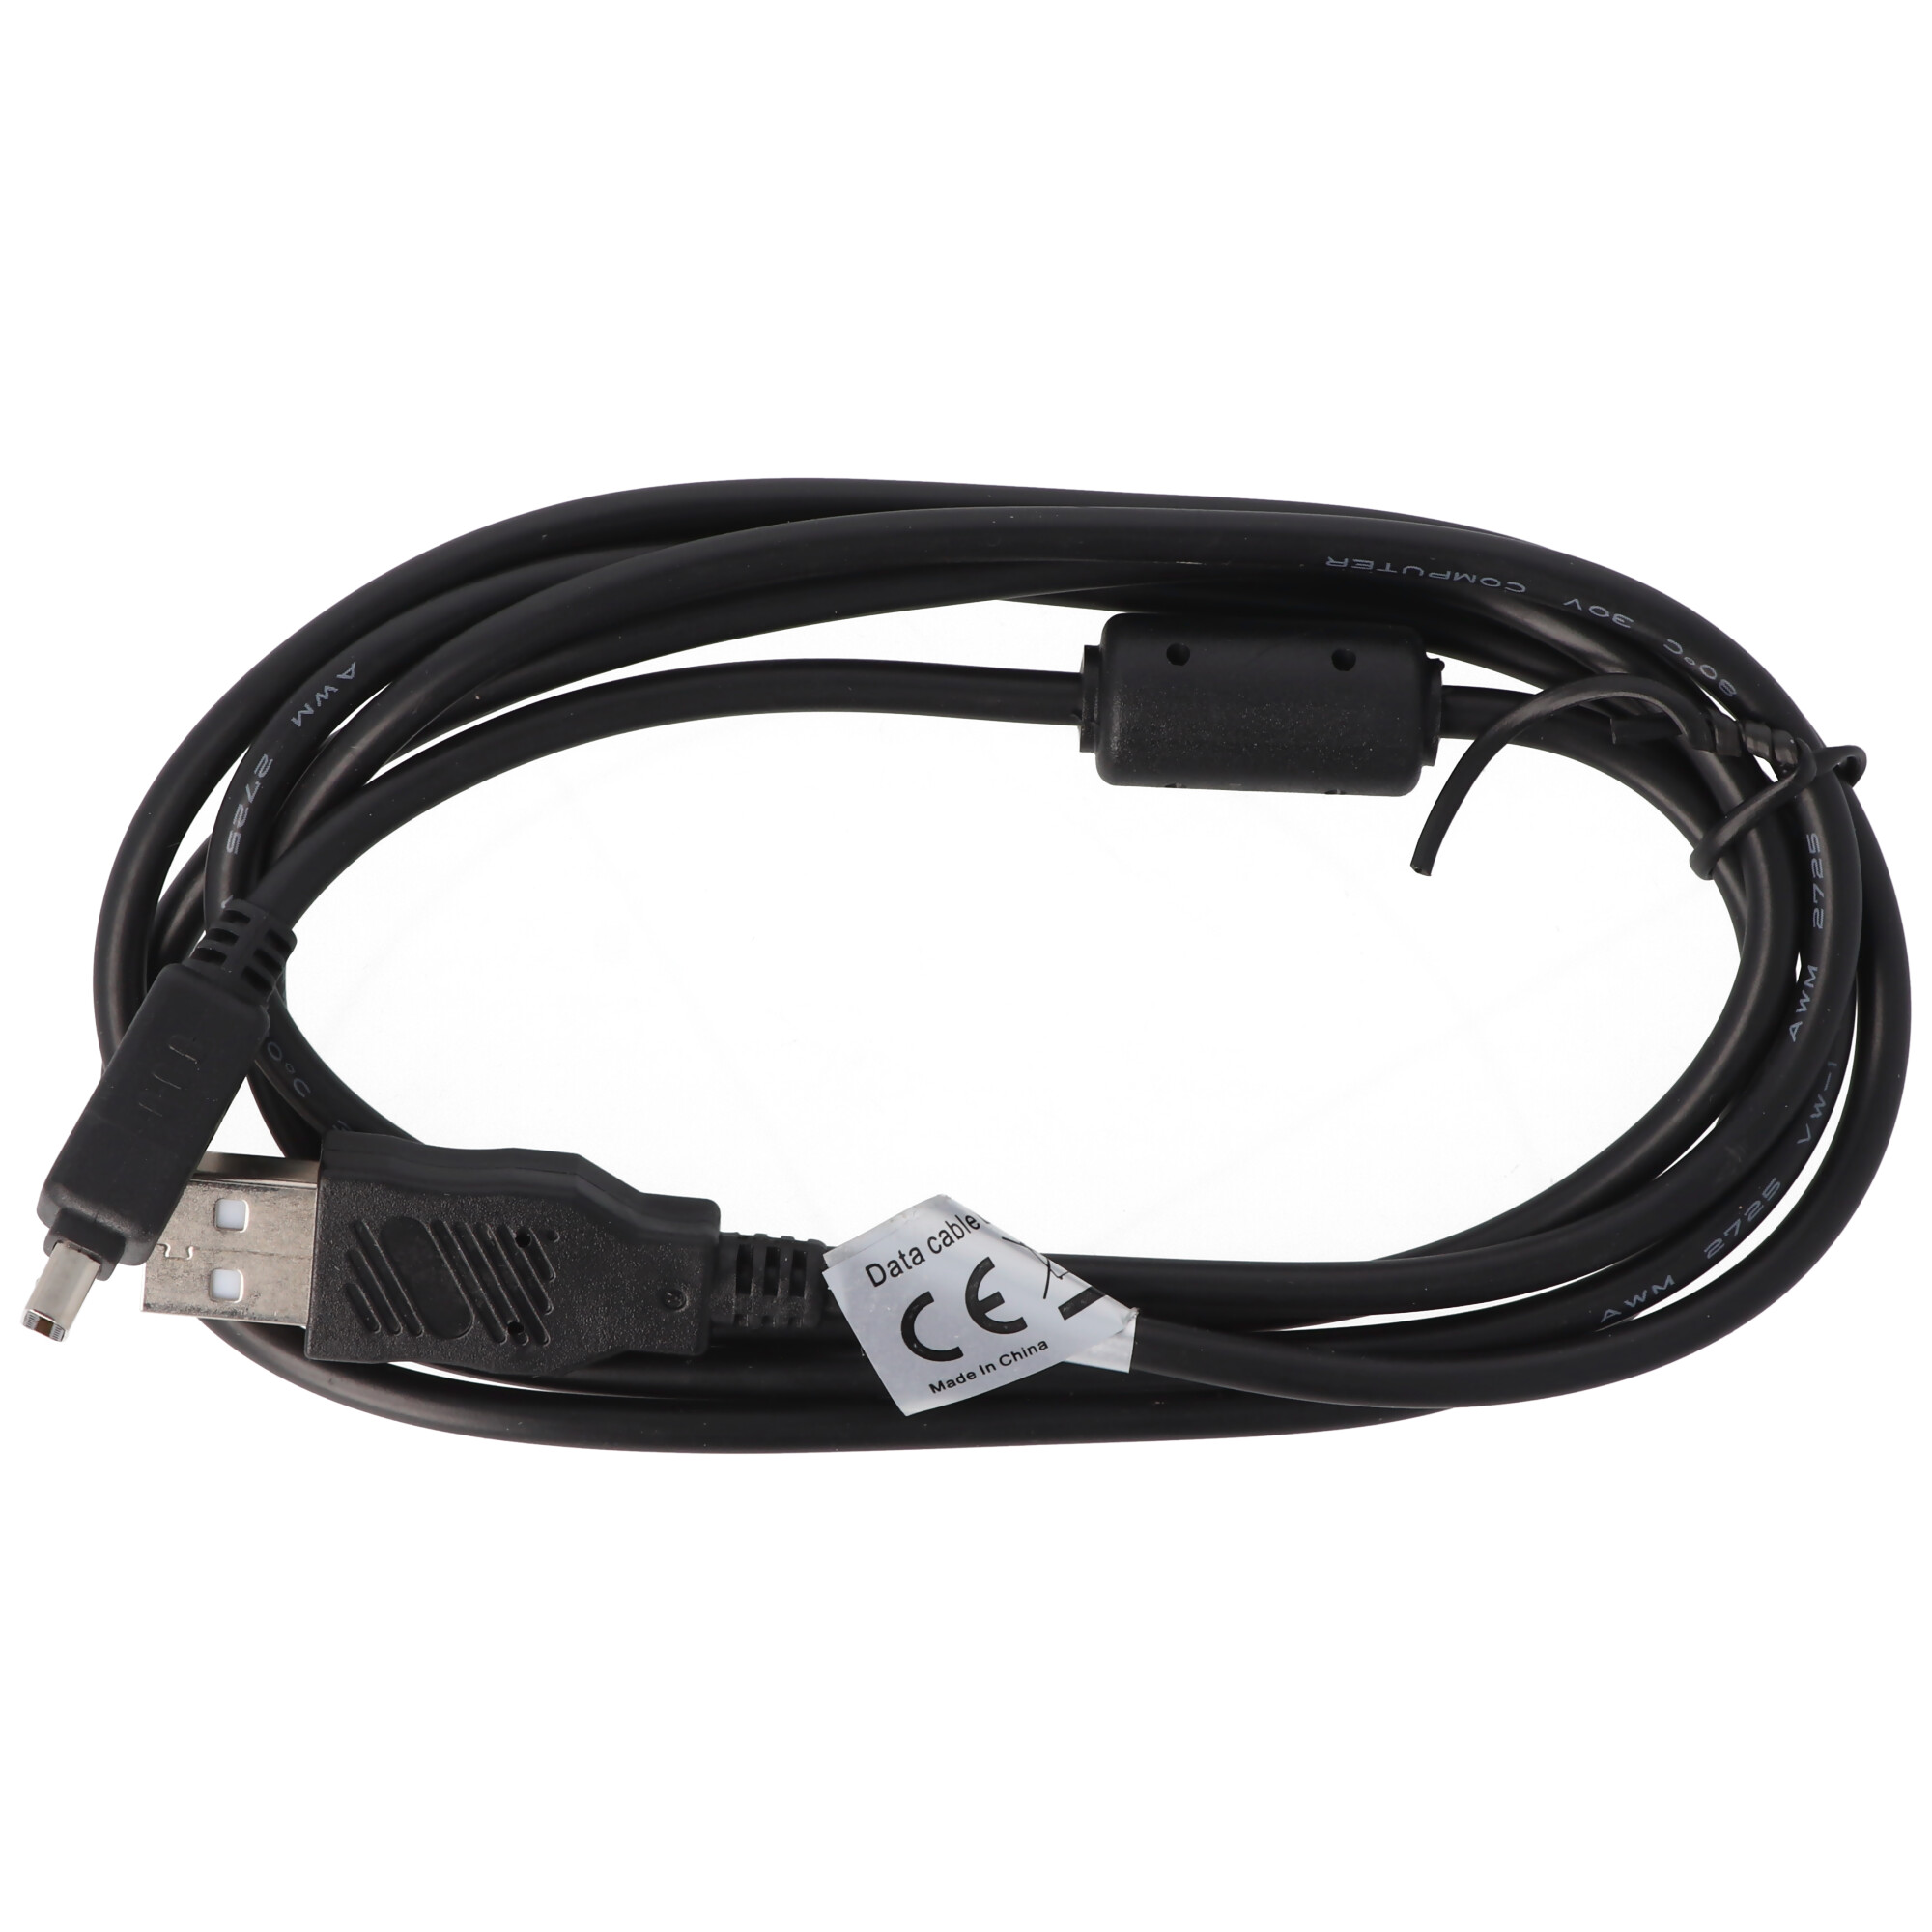 USB-Kabel passend für das Olympus CB-USB6 USB Kabel zum Datentransfer